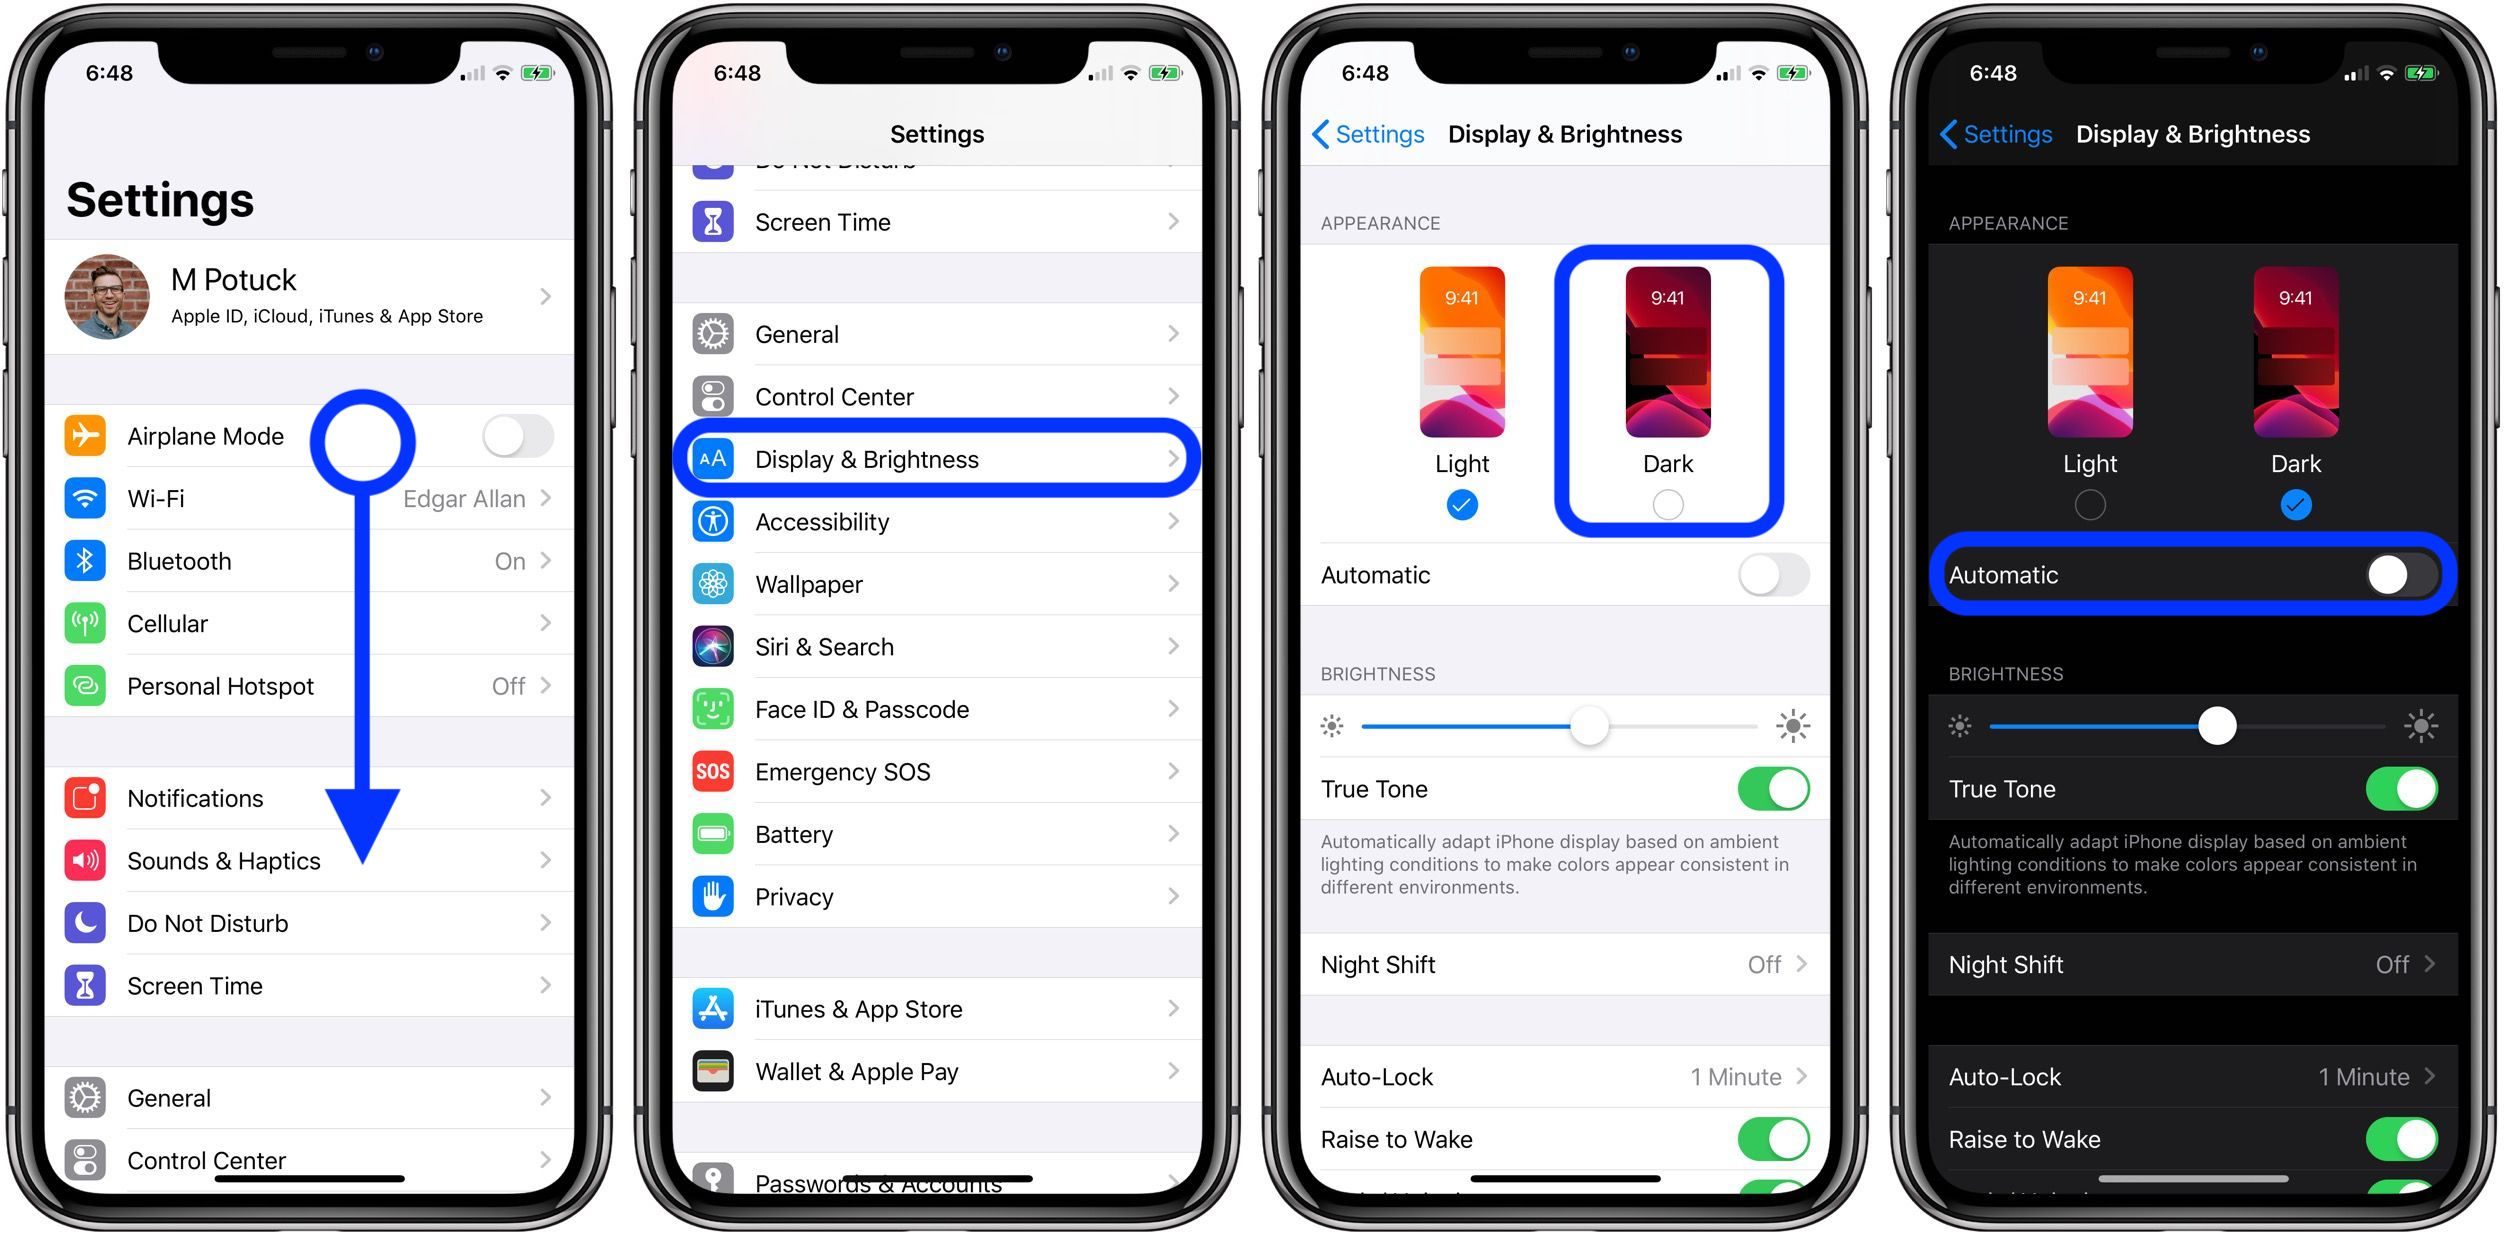 <span href="https://9to5mac.com/2019/06/04/how-to-use-dark-mode-iphone/">¿Cómo utilizar el Modo Oscuro en el iPhone en iOS 13</a>